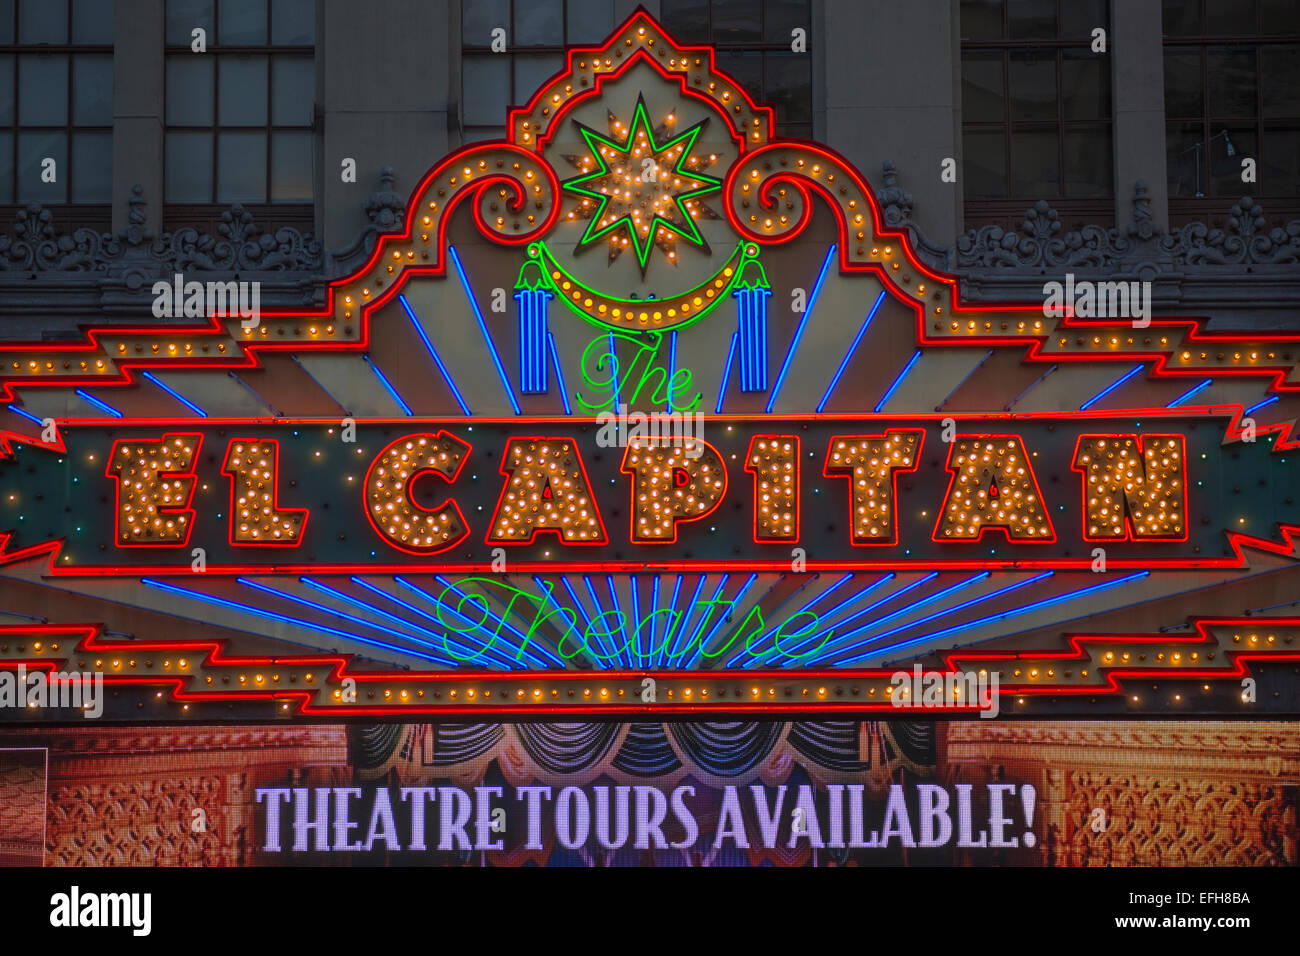 Théâtre El Capitan d'AUVENTS NÉON CENTRE DE DIVERTISSEMENT HOLLYWOOD BOULEVARD LOS ANGELES CALIFORNIA USA Banque D'Images